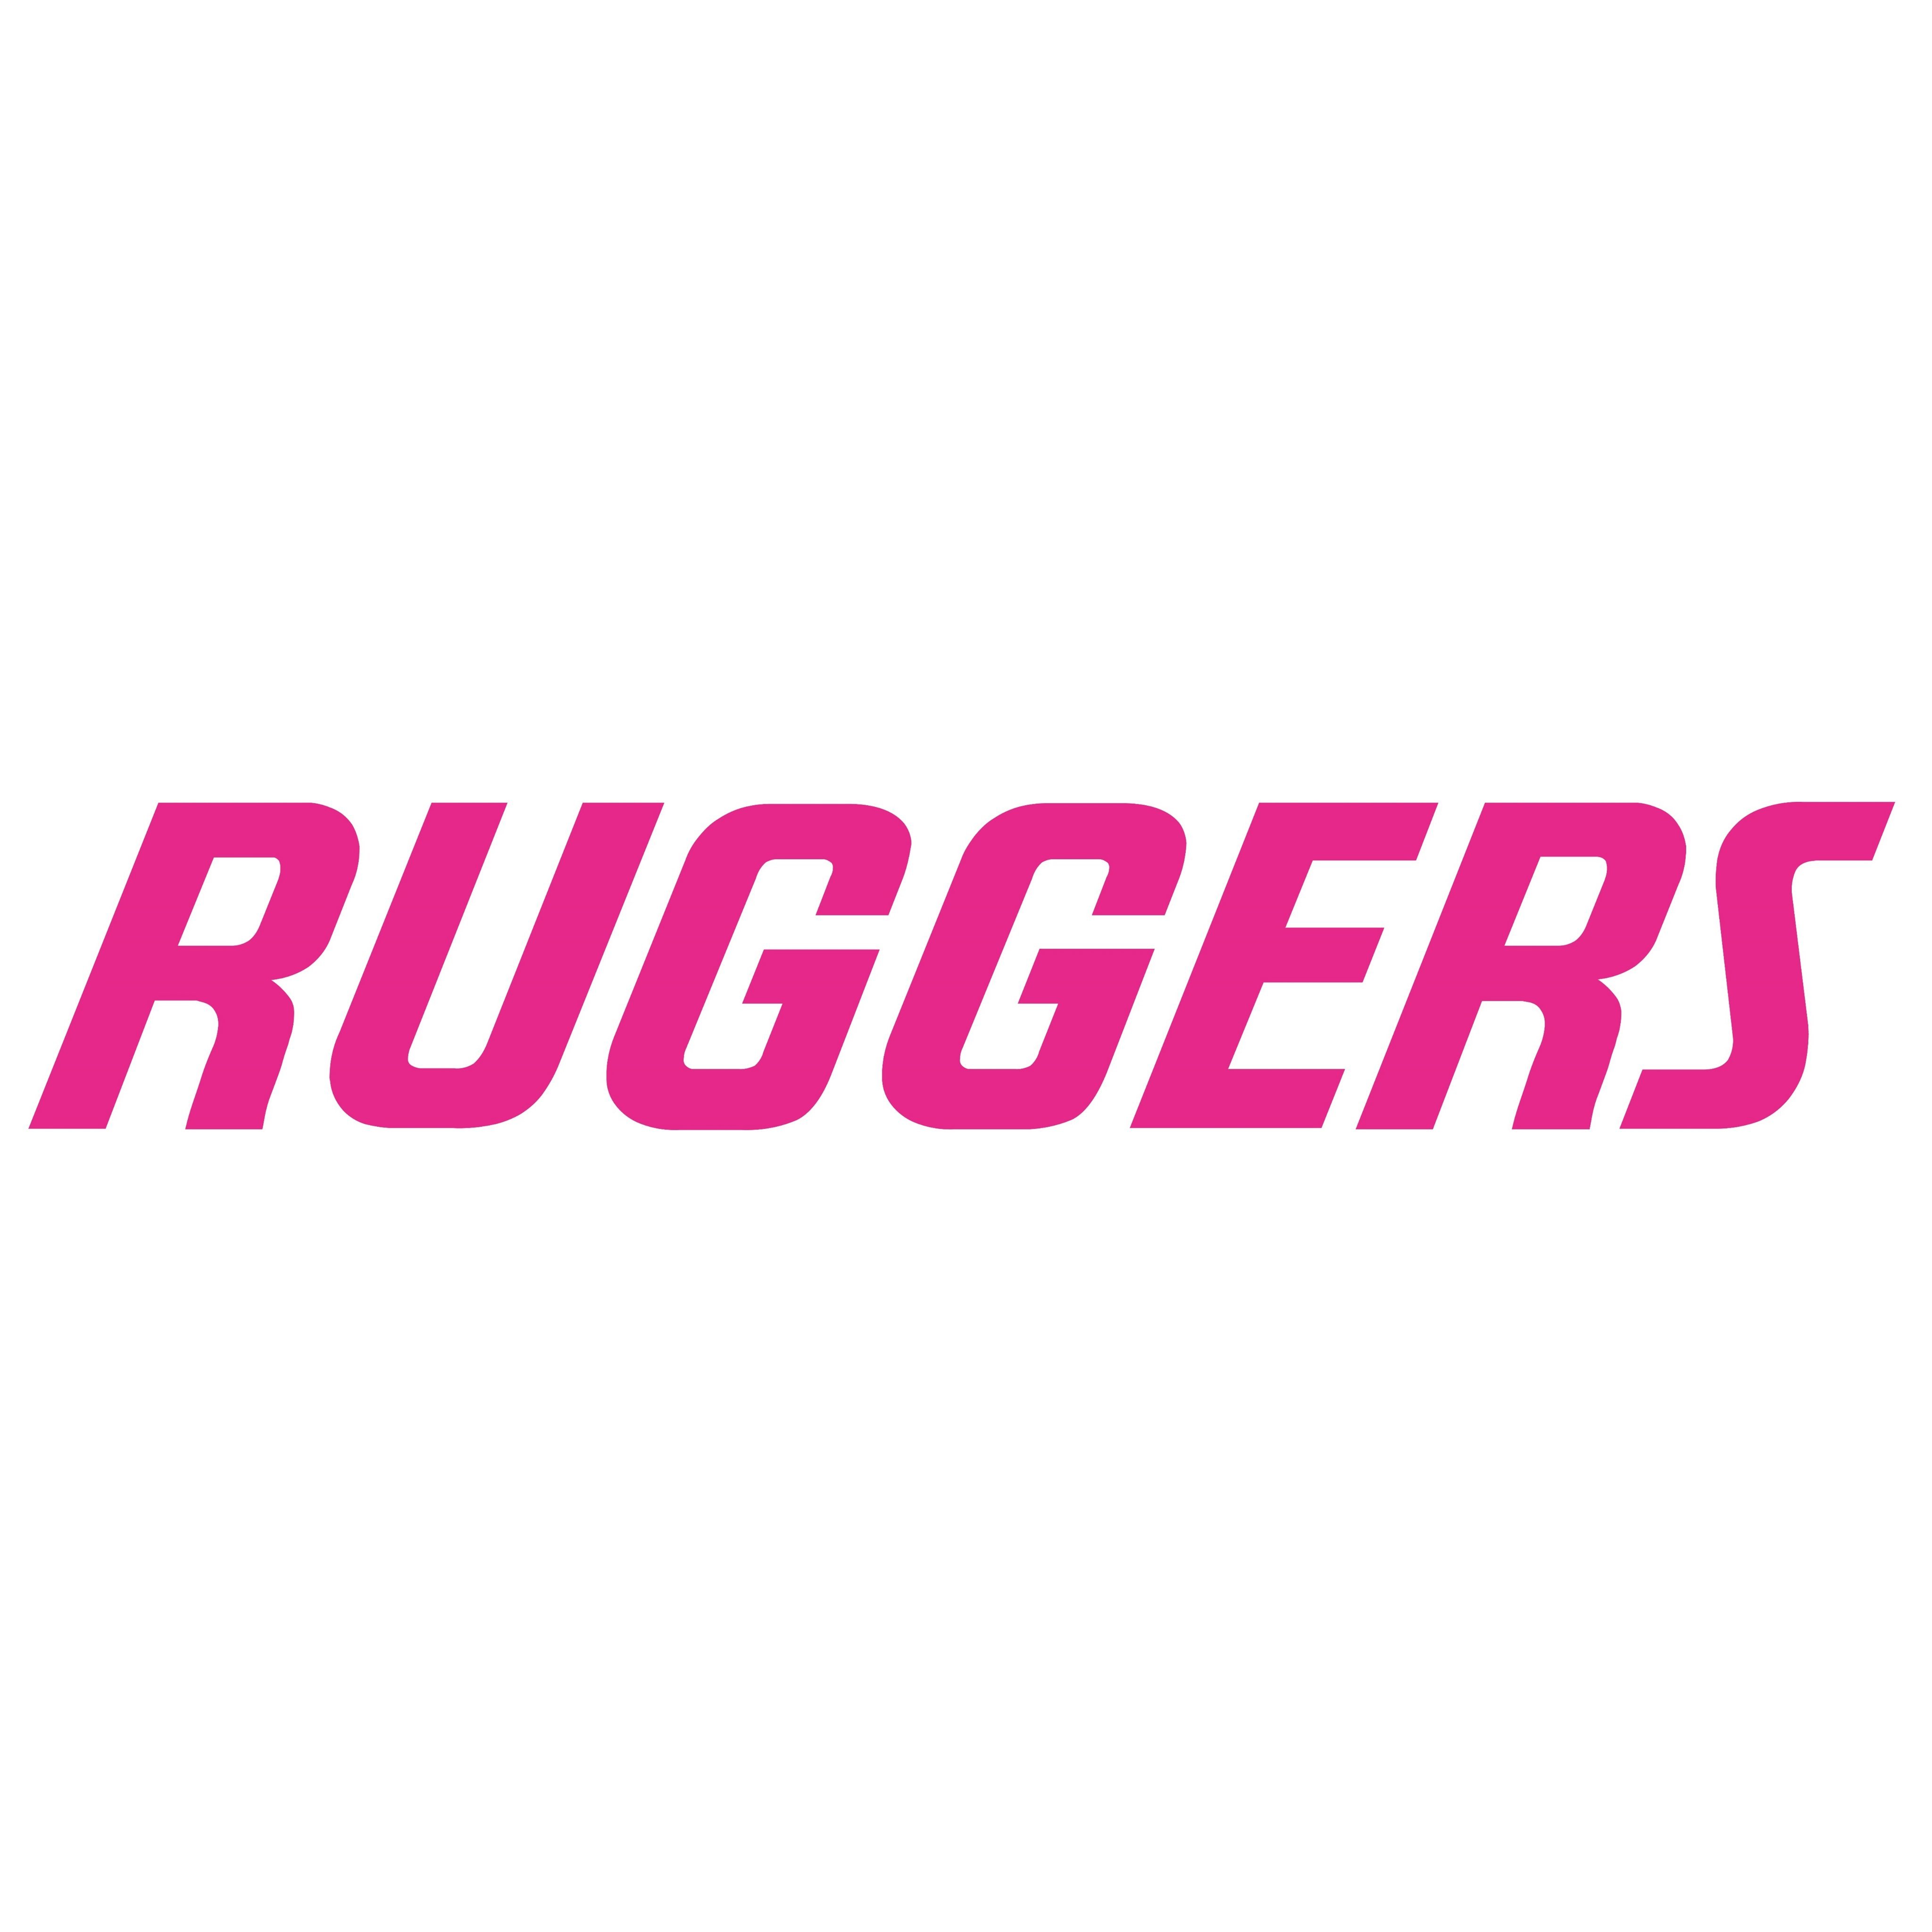 「RUGGERS」は、ラグビー選手会が運営主体を務め、ファンと選手がつながる新しいラグビーアプリ（メディア）です。YouTube→https://t.co/doLNJQgs2C